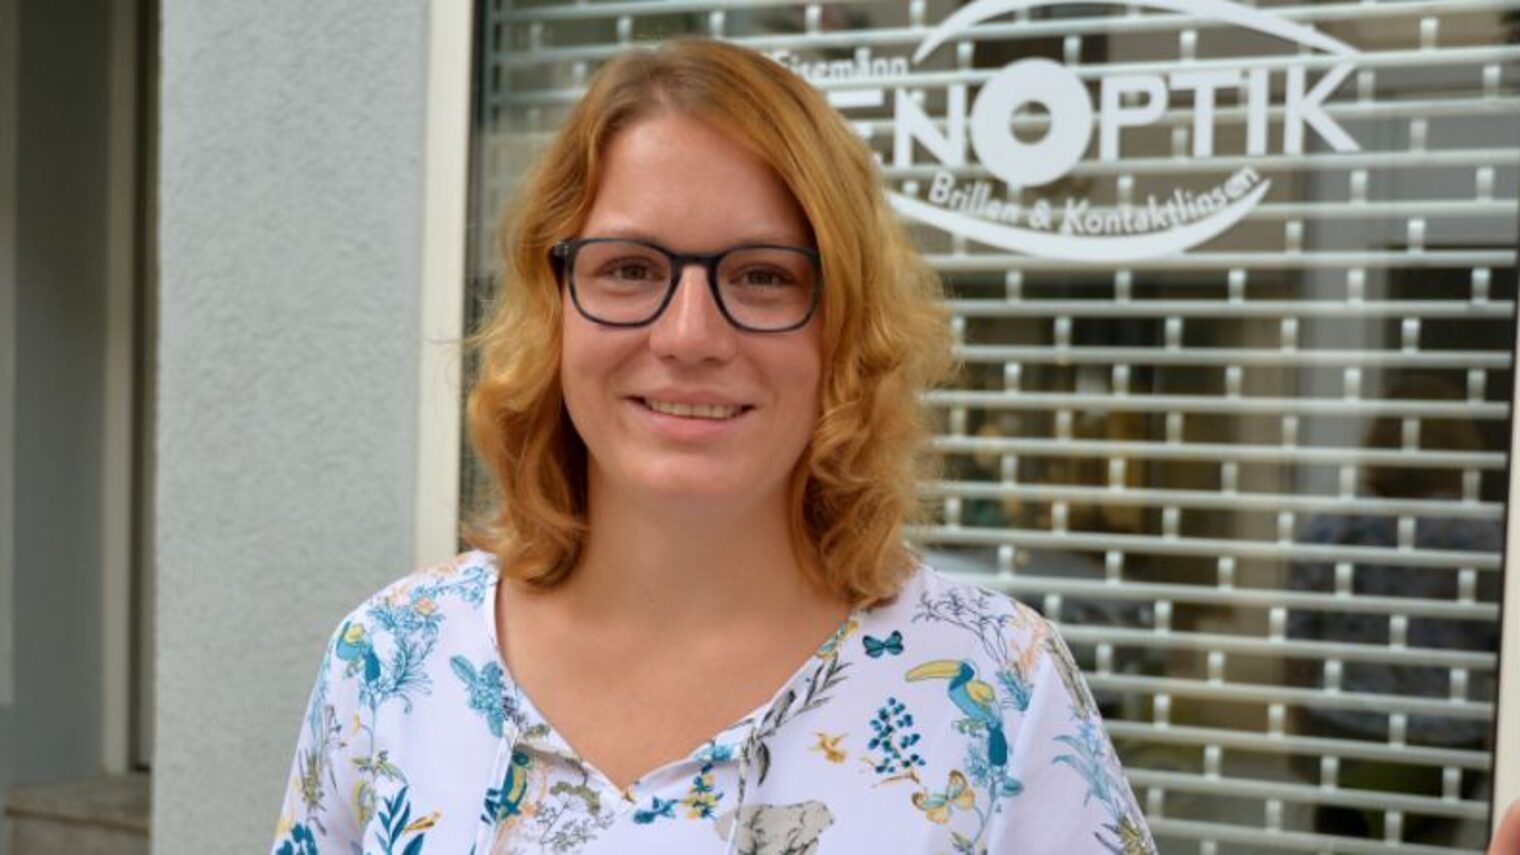 Optikermeisterin Nadine Eisemann gründet mithilfe der Meistergründungsprämie in Oschersleben ihr eigenes Unternehmen.